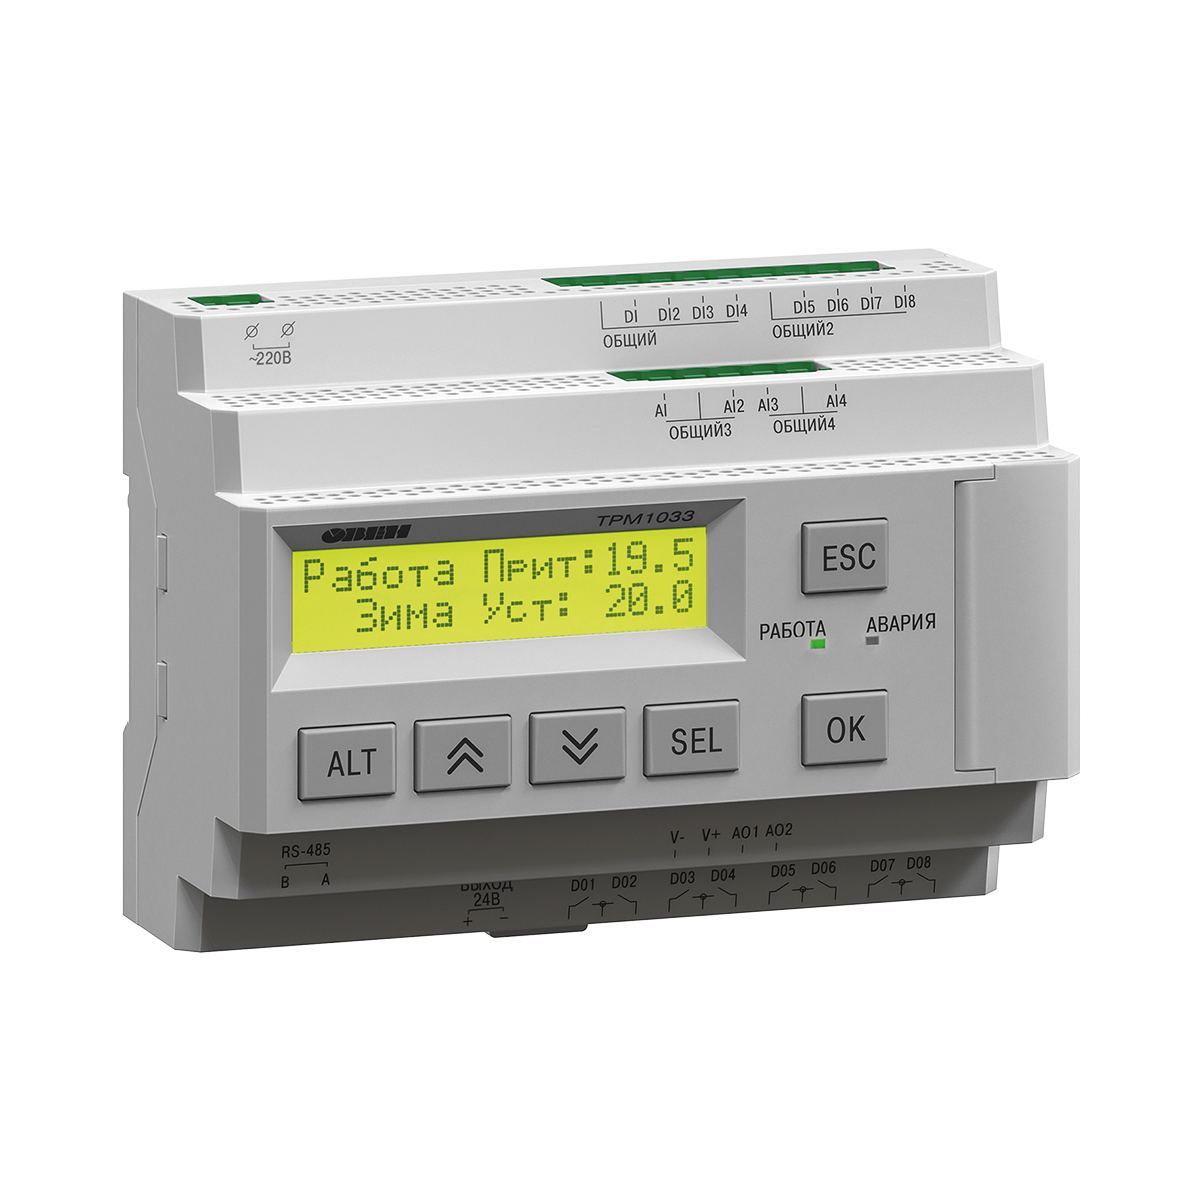 ТРМ1033 Контроллер для приточно-вытяжных систем вентиляции